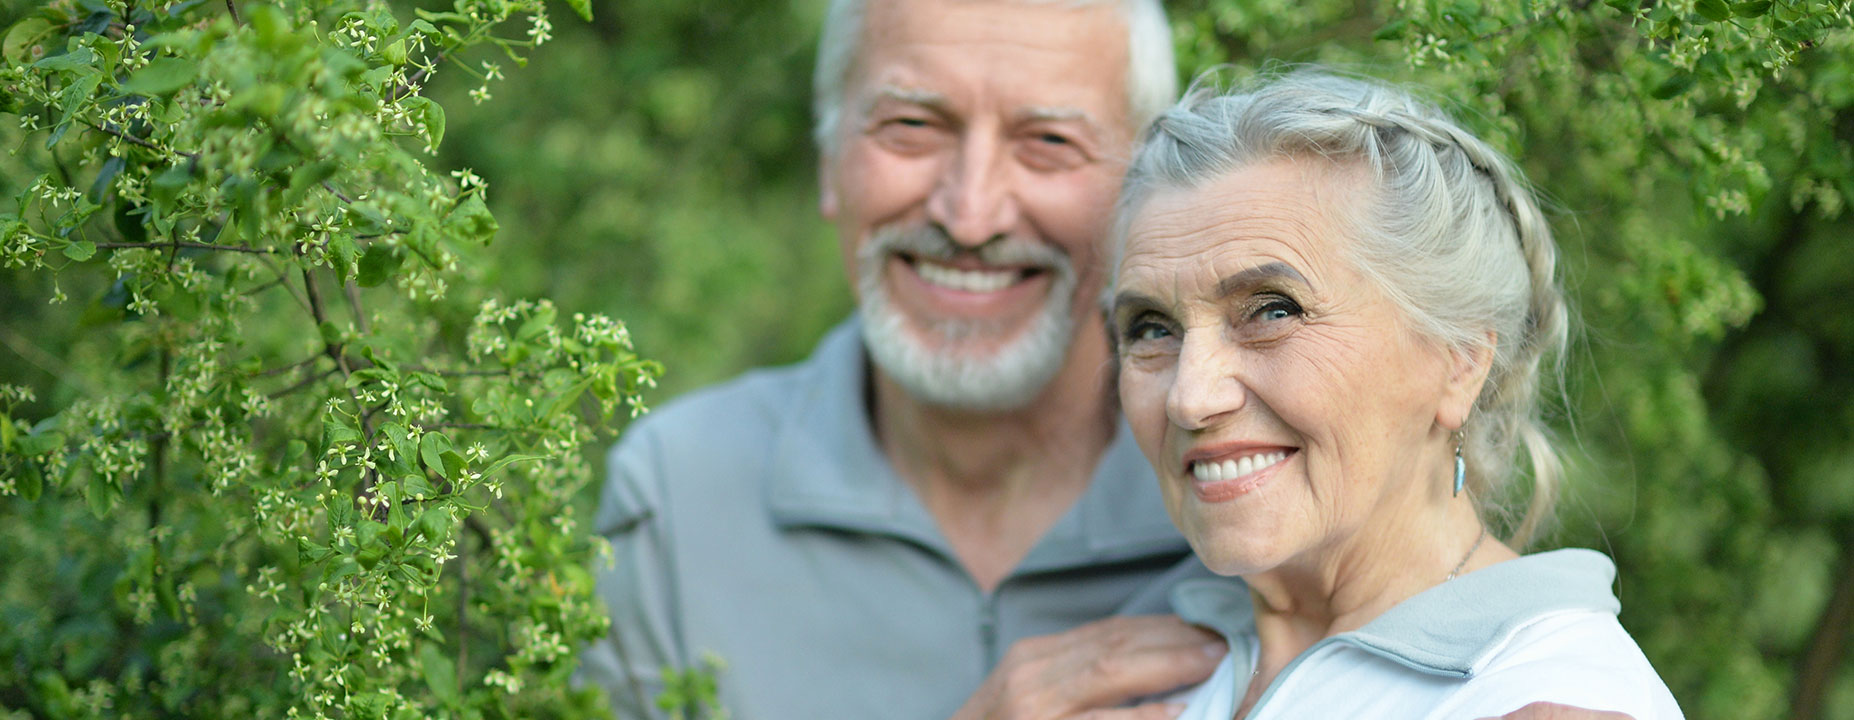 Senior couple happy with dentures